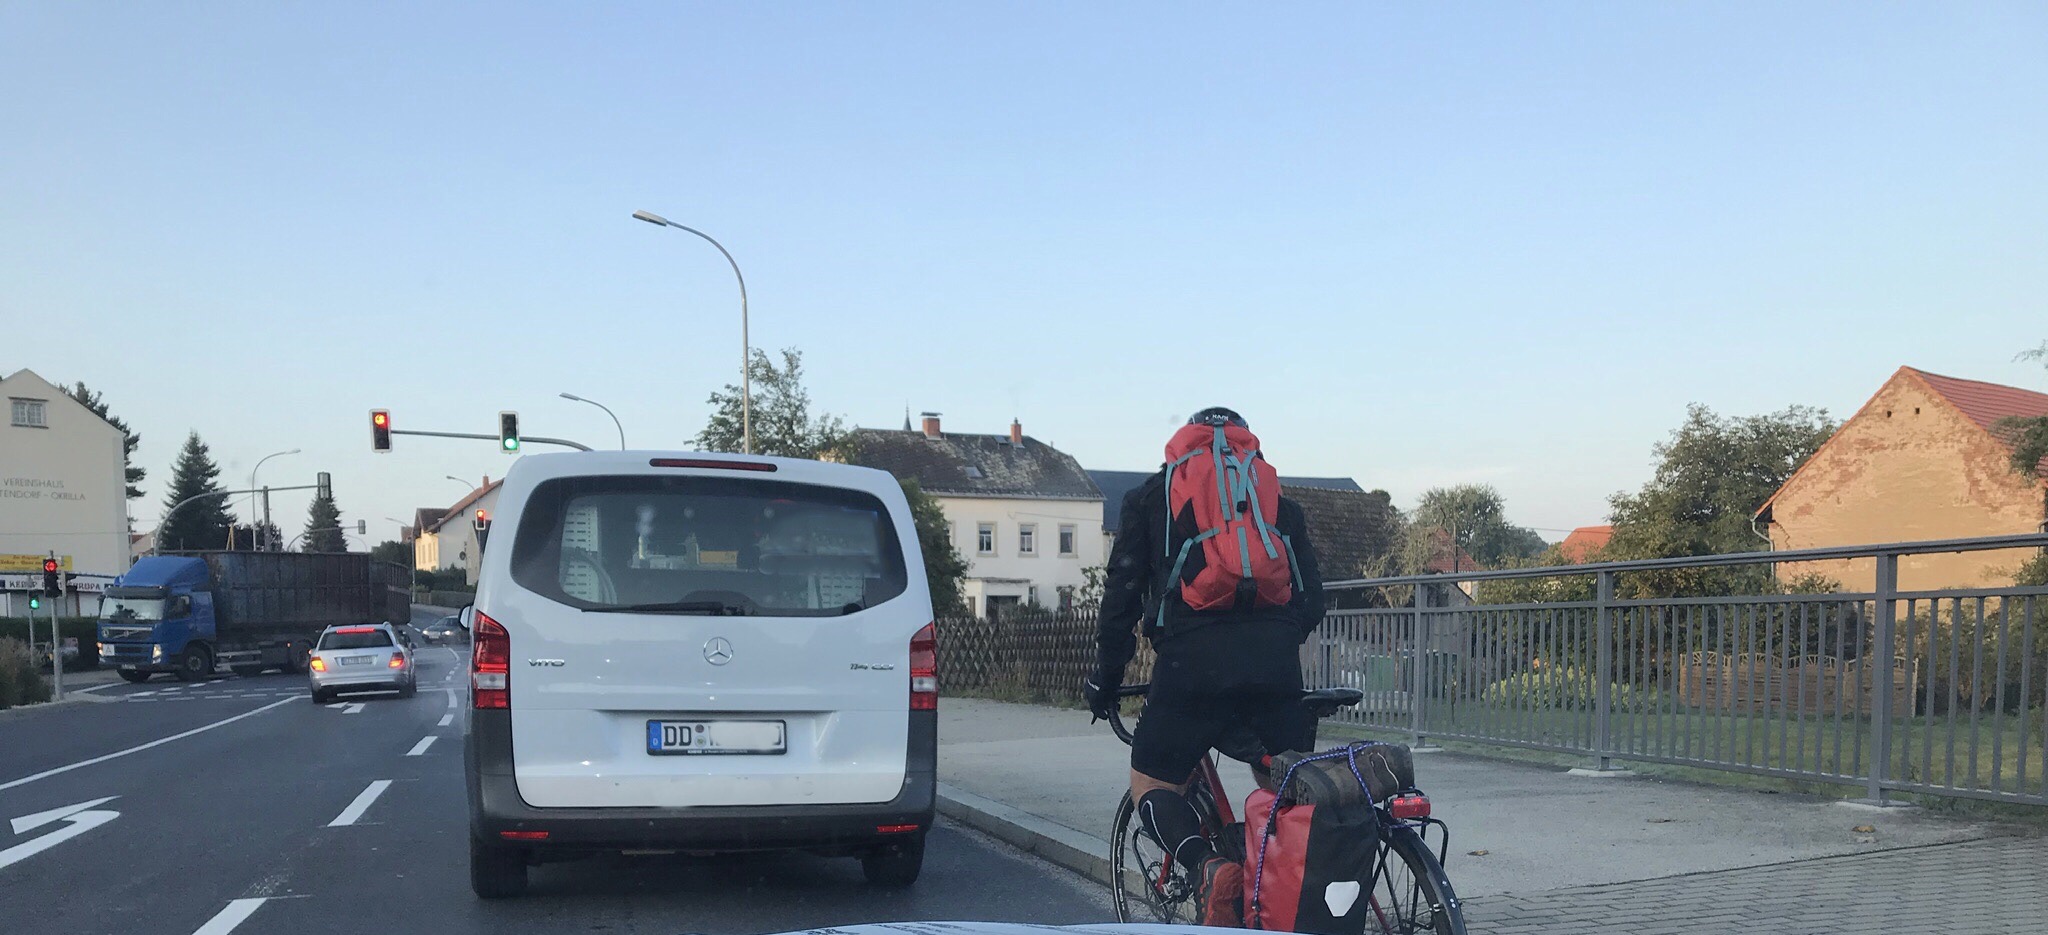 Radfahrer auf der Straße 